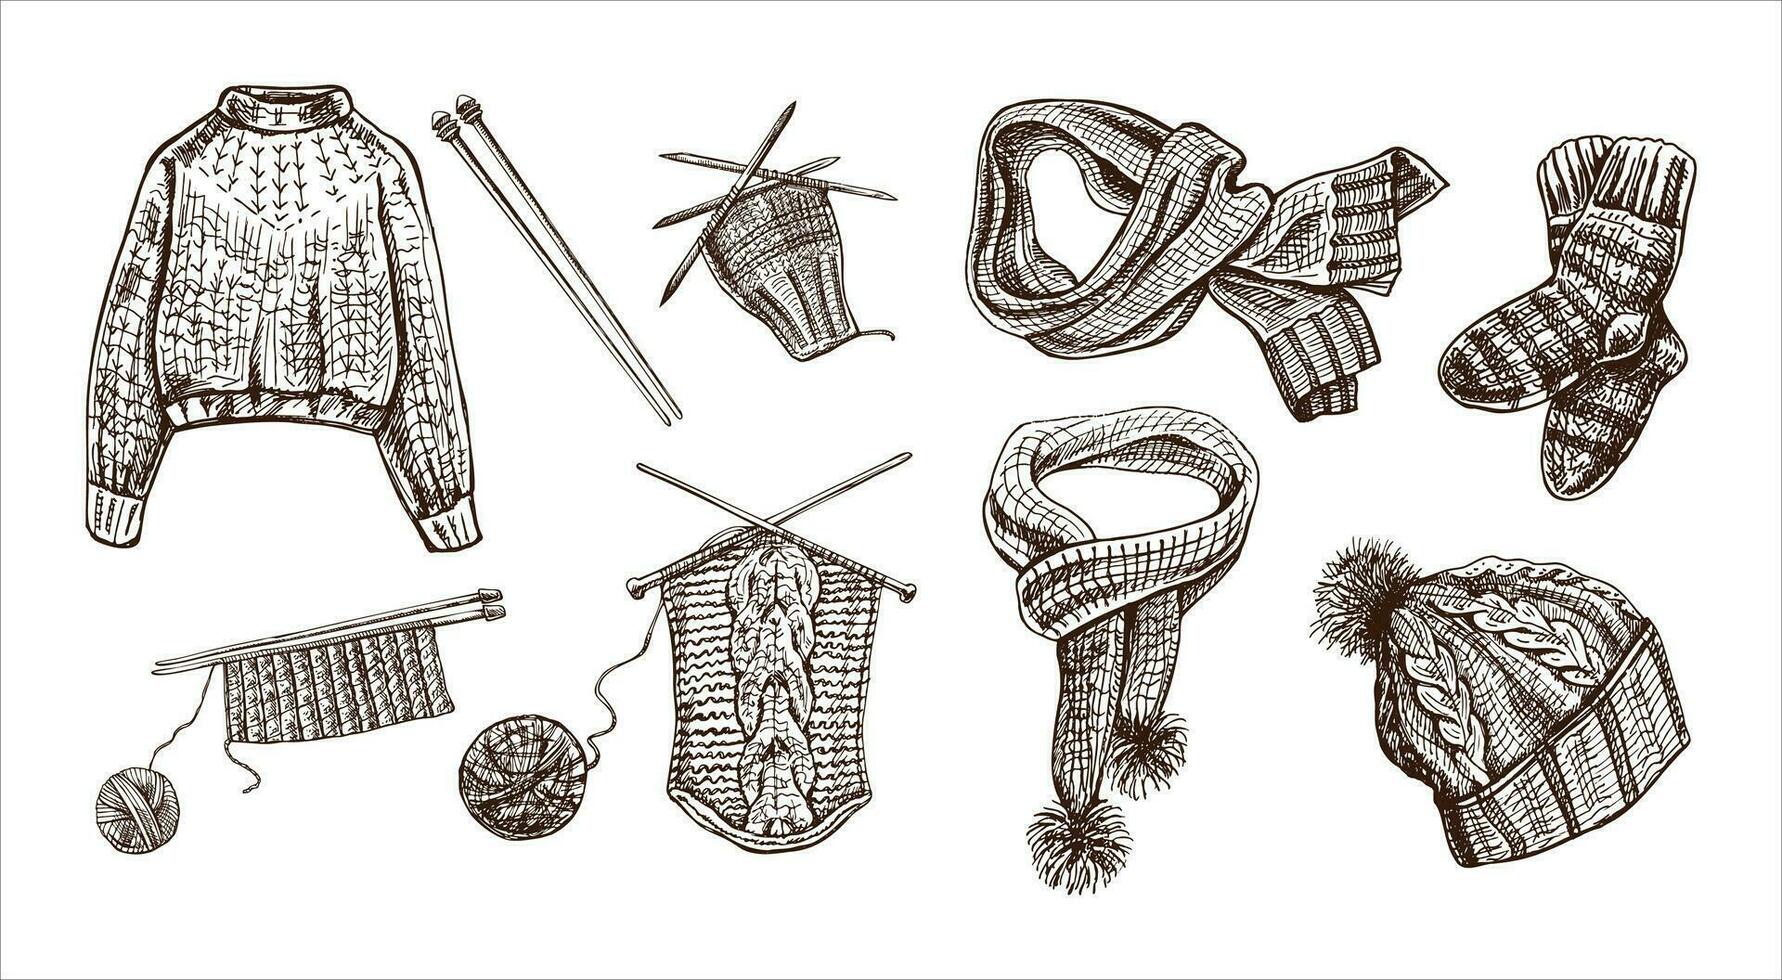 Clásico conjunto de mano dibujado de punto suéter, medias, bufanda, sombrero, tejido de punto proceso, tejido de punto agujas iconos hecho a mano, de coser equipo concepto en Clásico garabatear estilo. vector